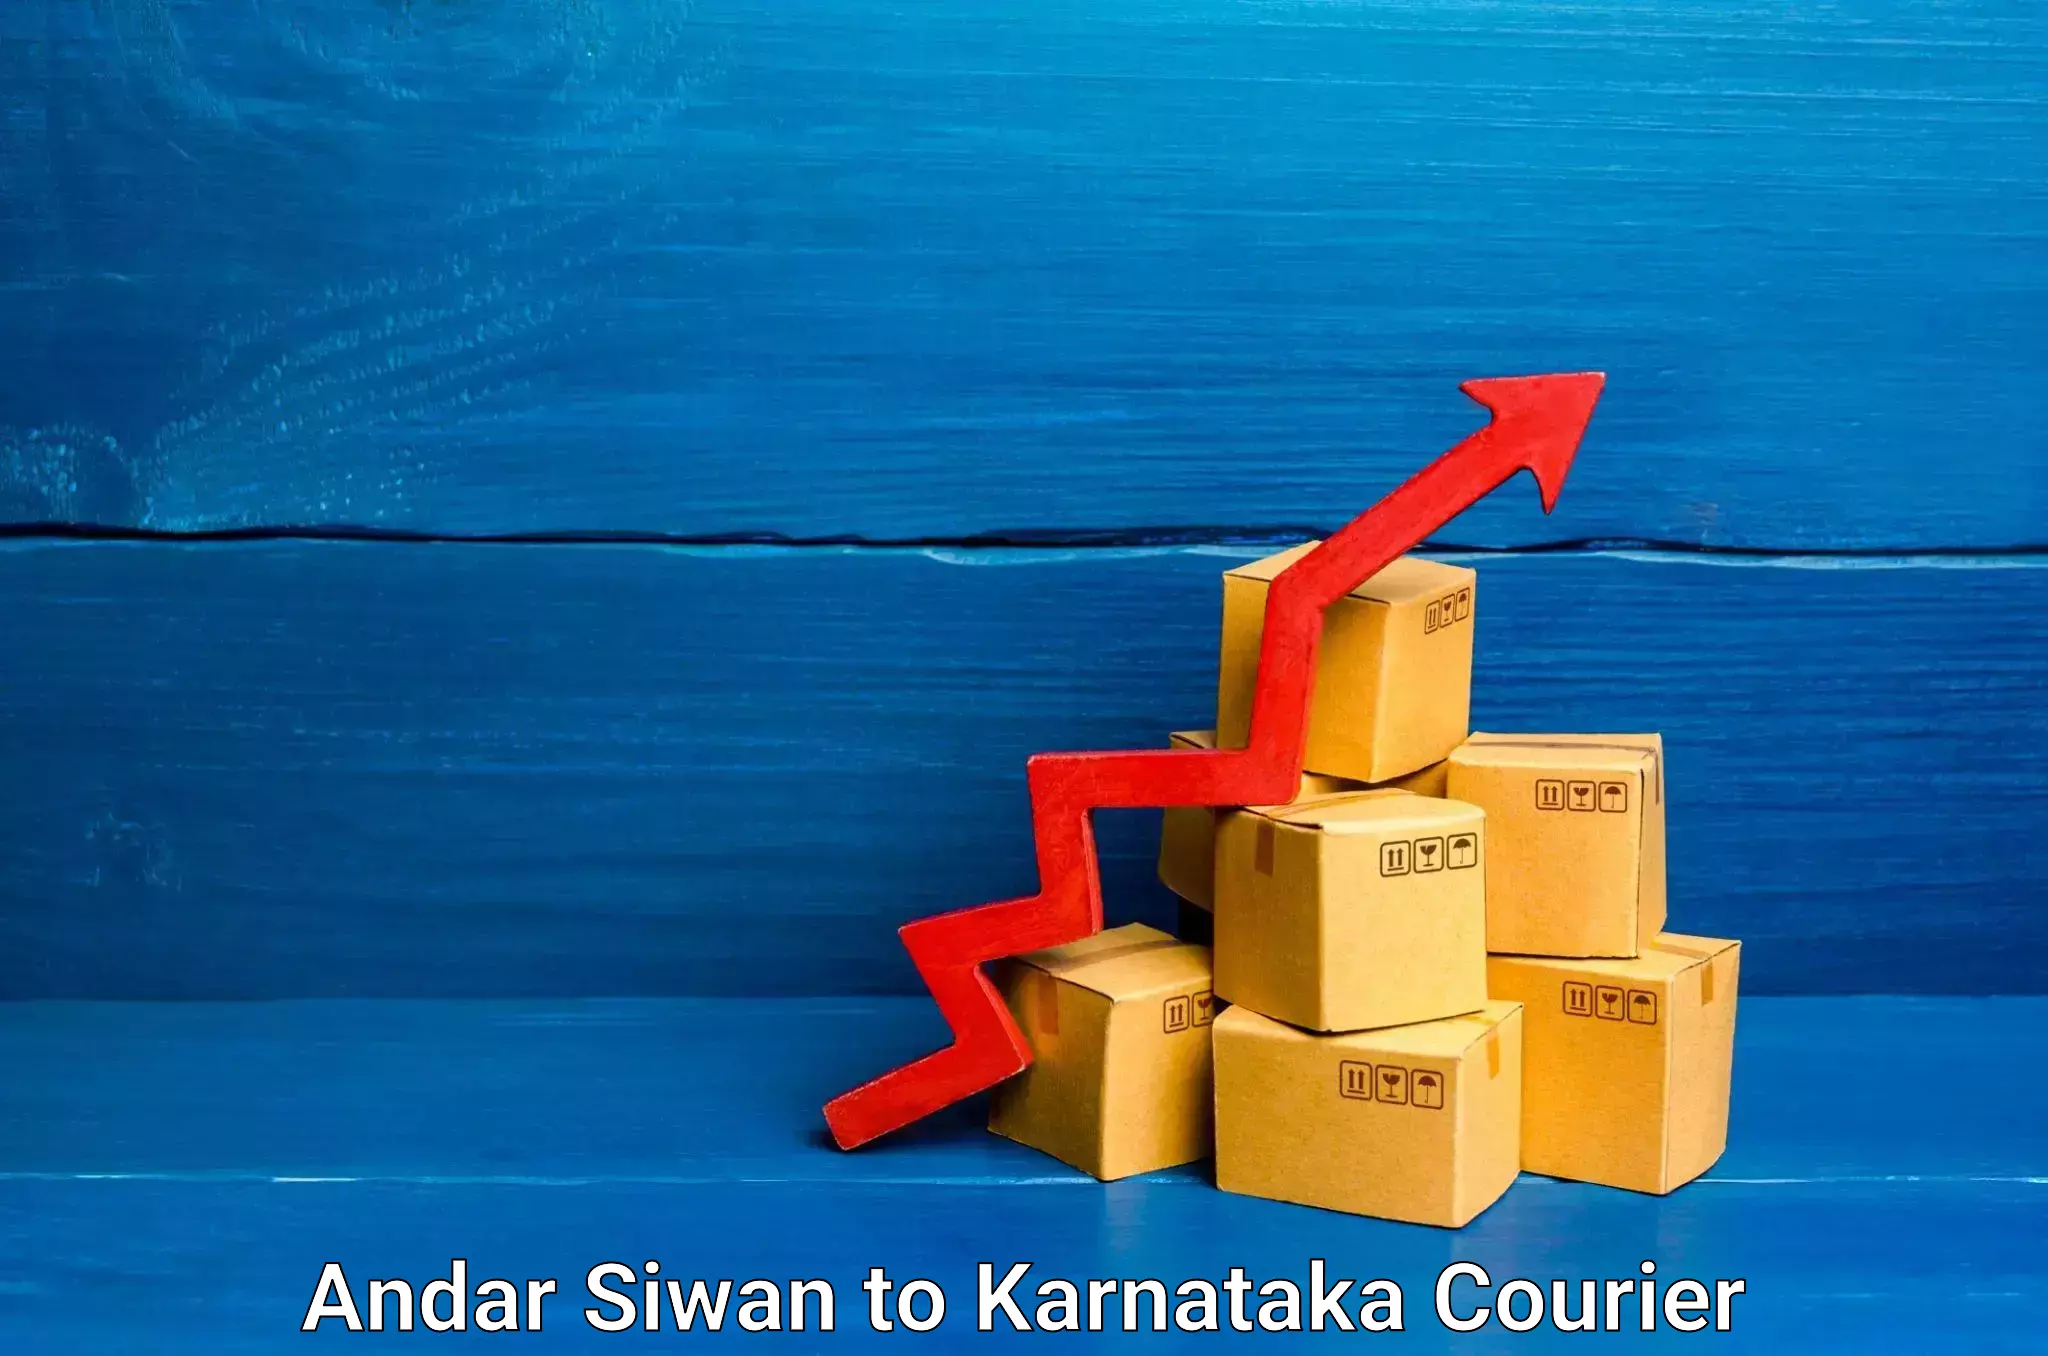 Furniture moving services Andar Siwan to Karnataka